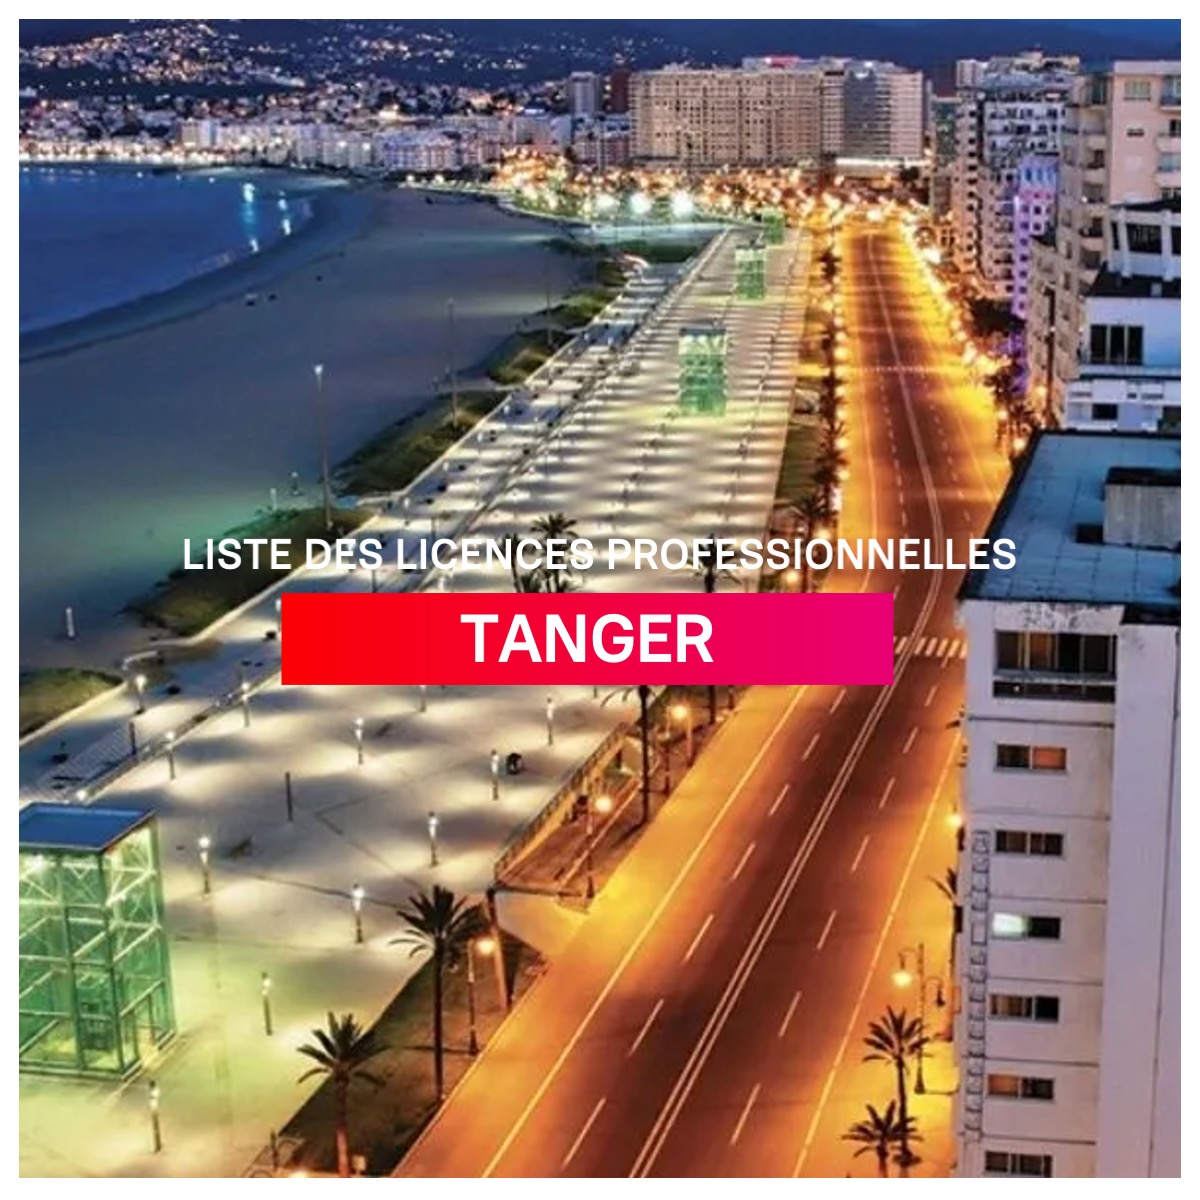 Liste des licences professionnelles à Tanger l mba.ma